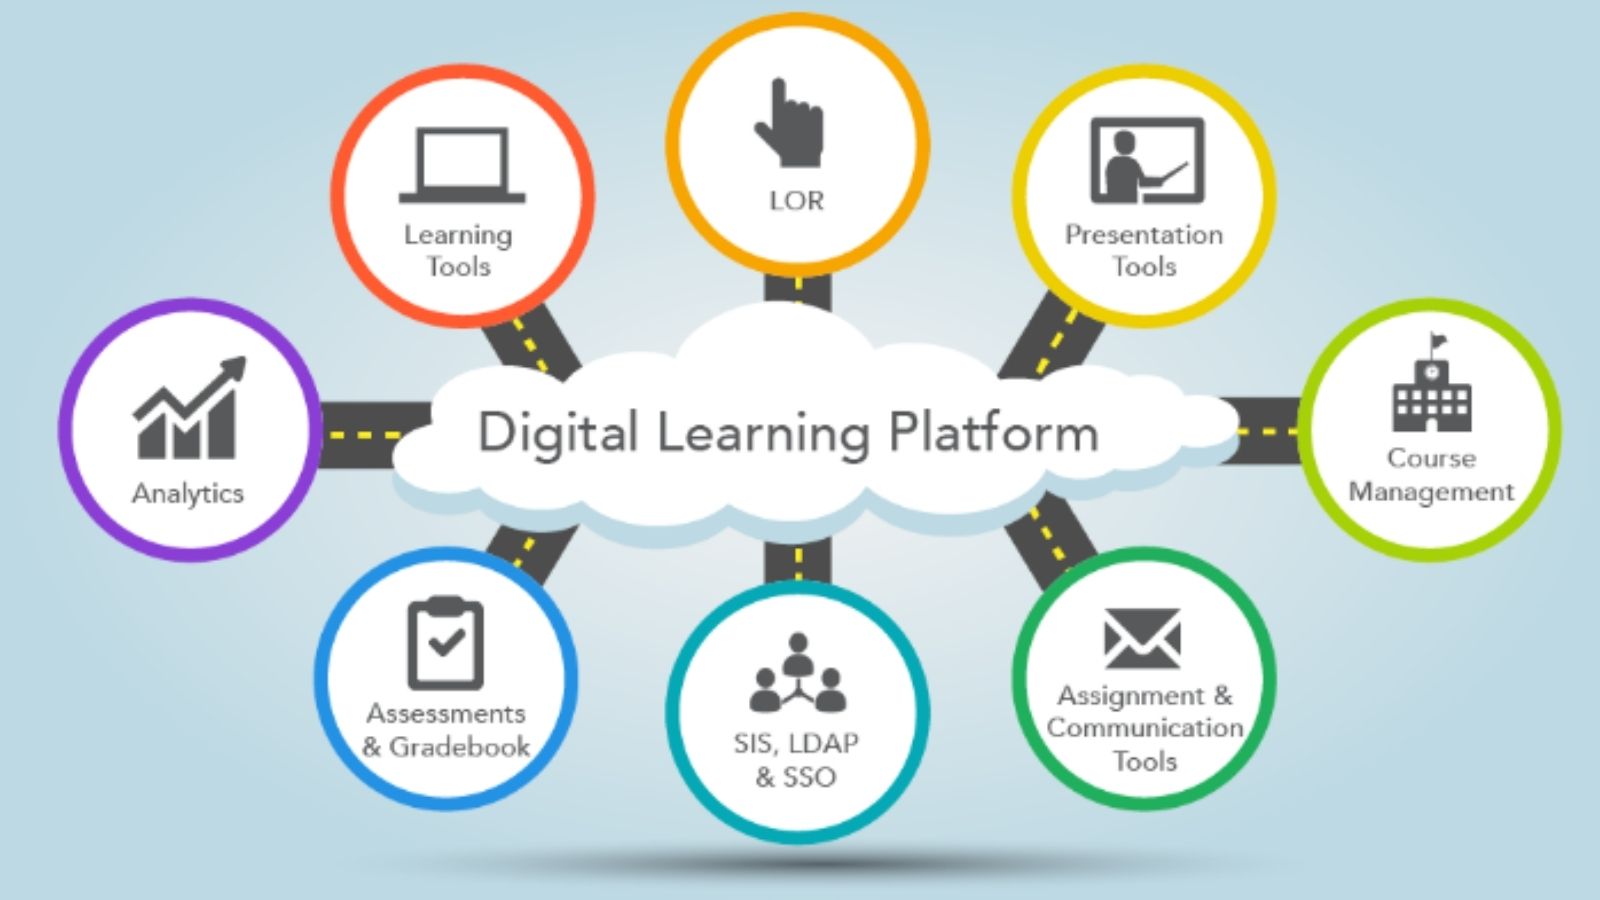 Wants to site. Digital Learning Tools. Digital обучение. E-Learning. Электронное обучение.